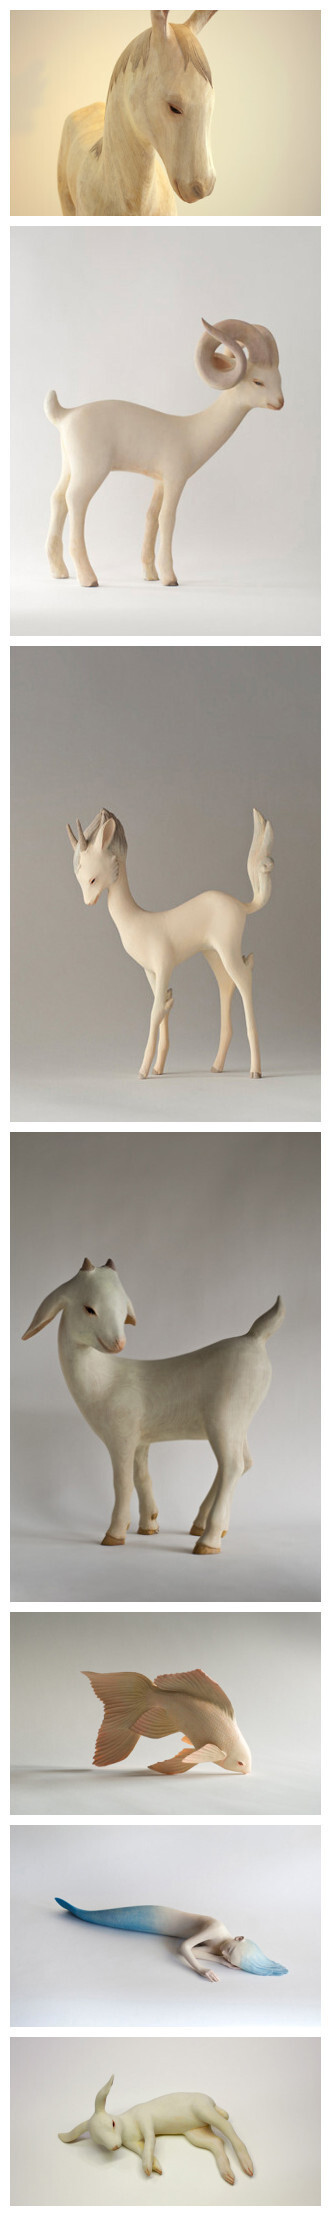  栩栩如生的人鱼、小鹿和独角兽——来自日本雕塑家Yoshimasa Tsuchiya